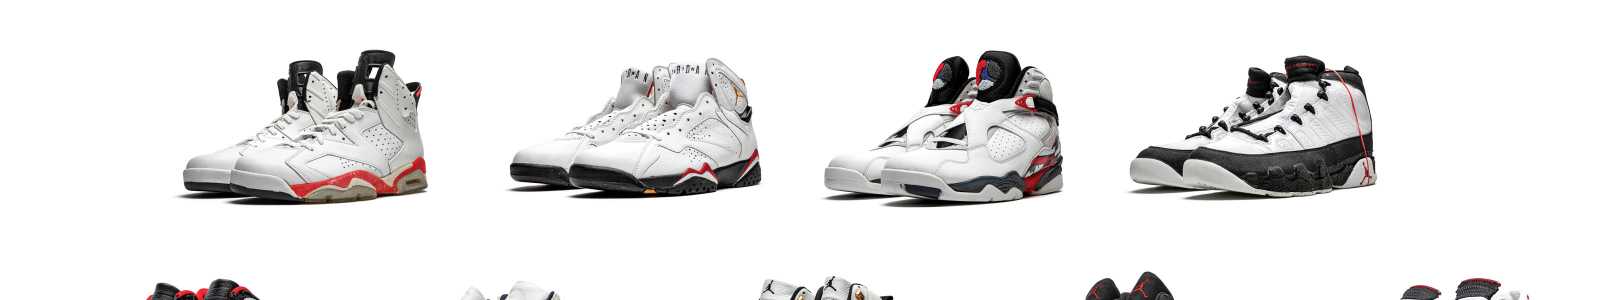 Оригинальные кроссовки Air Takes Flight: эволюция и влияние кроссовок Air Jordan